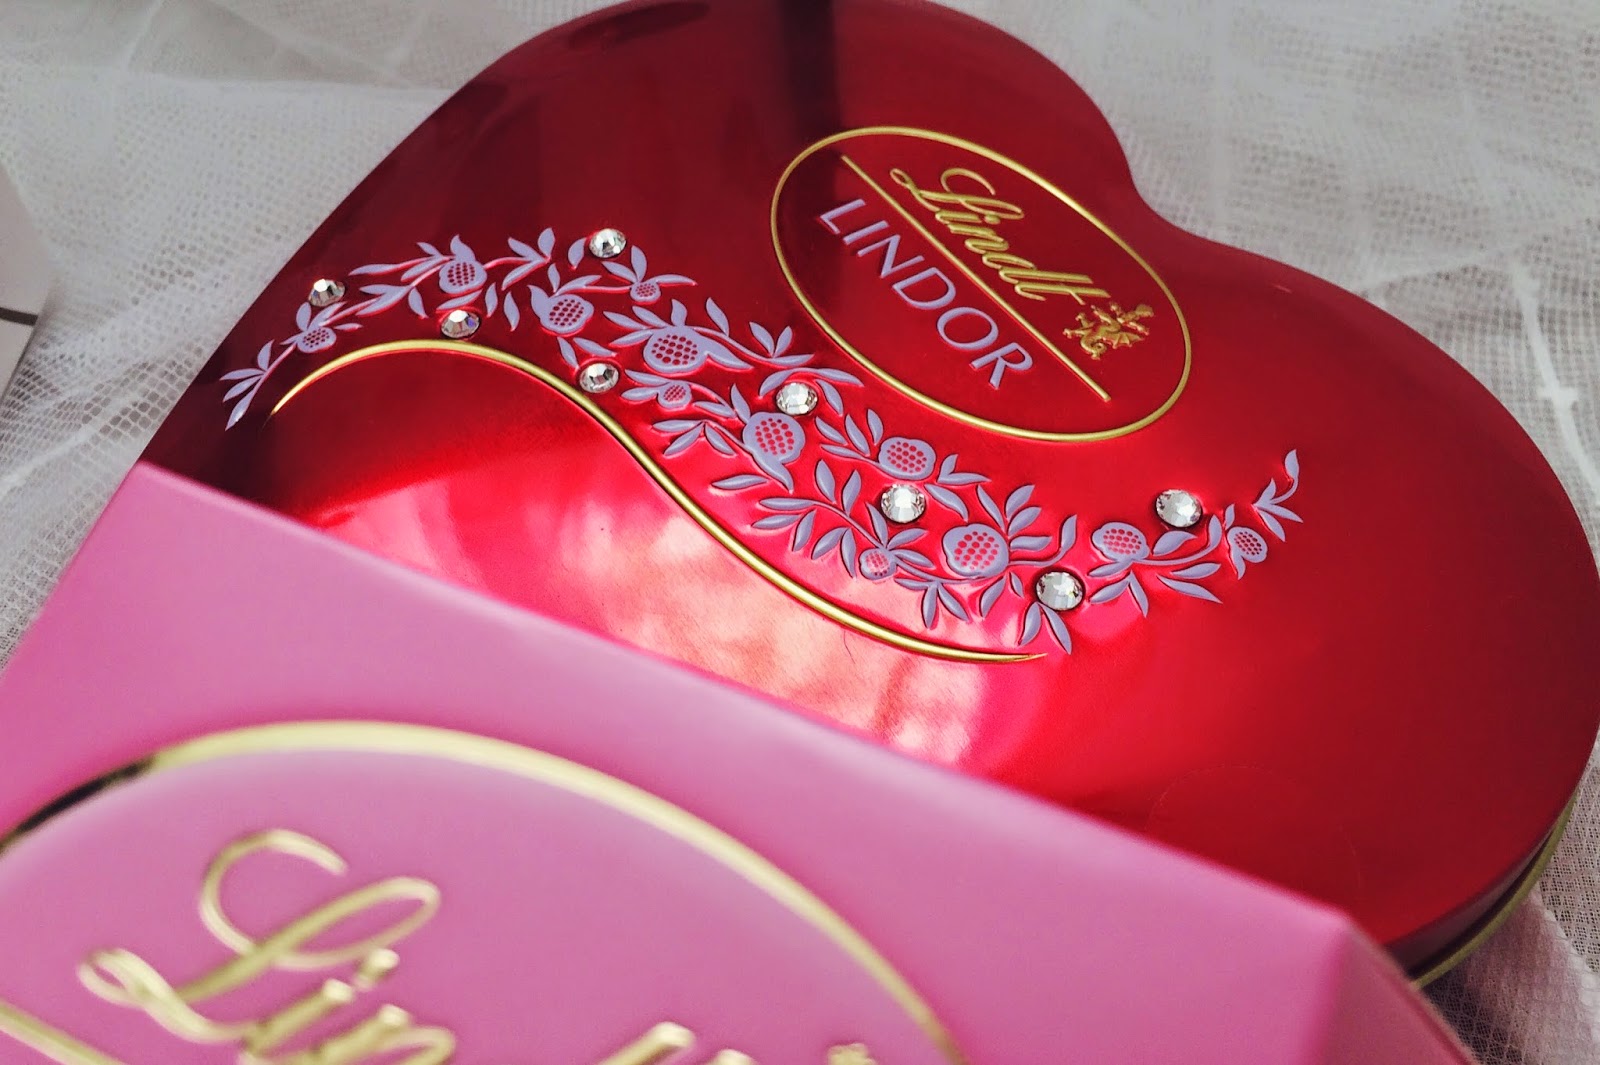 FashionFake, Valentines Day gift guide blog, UK lifestyle bloggers, UK food bloggers, Lindt chocolates, Lindor chocolates